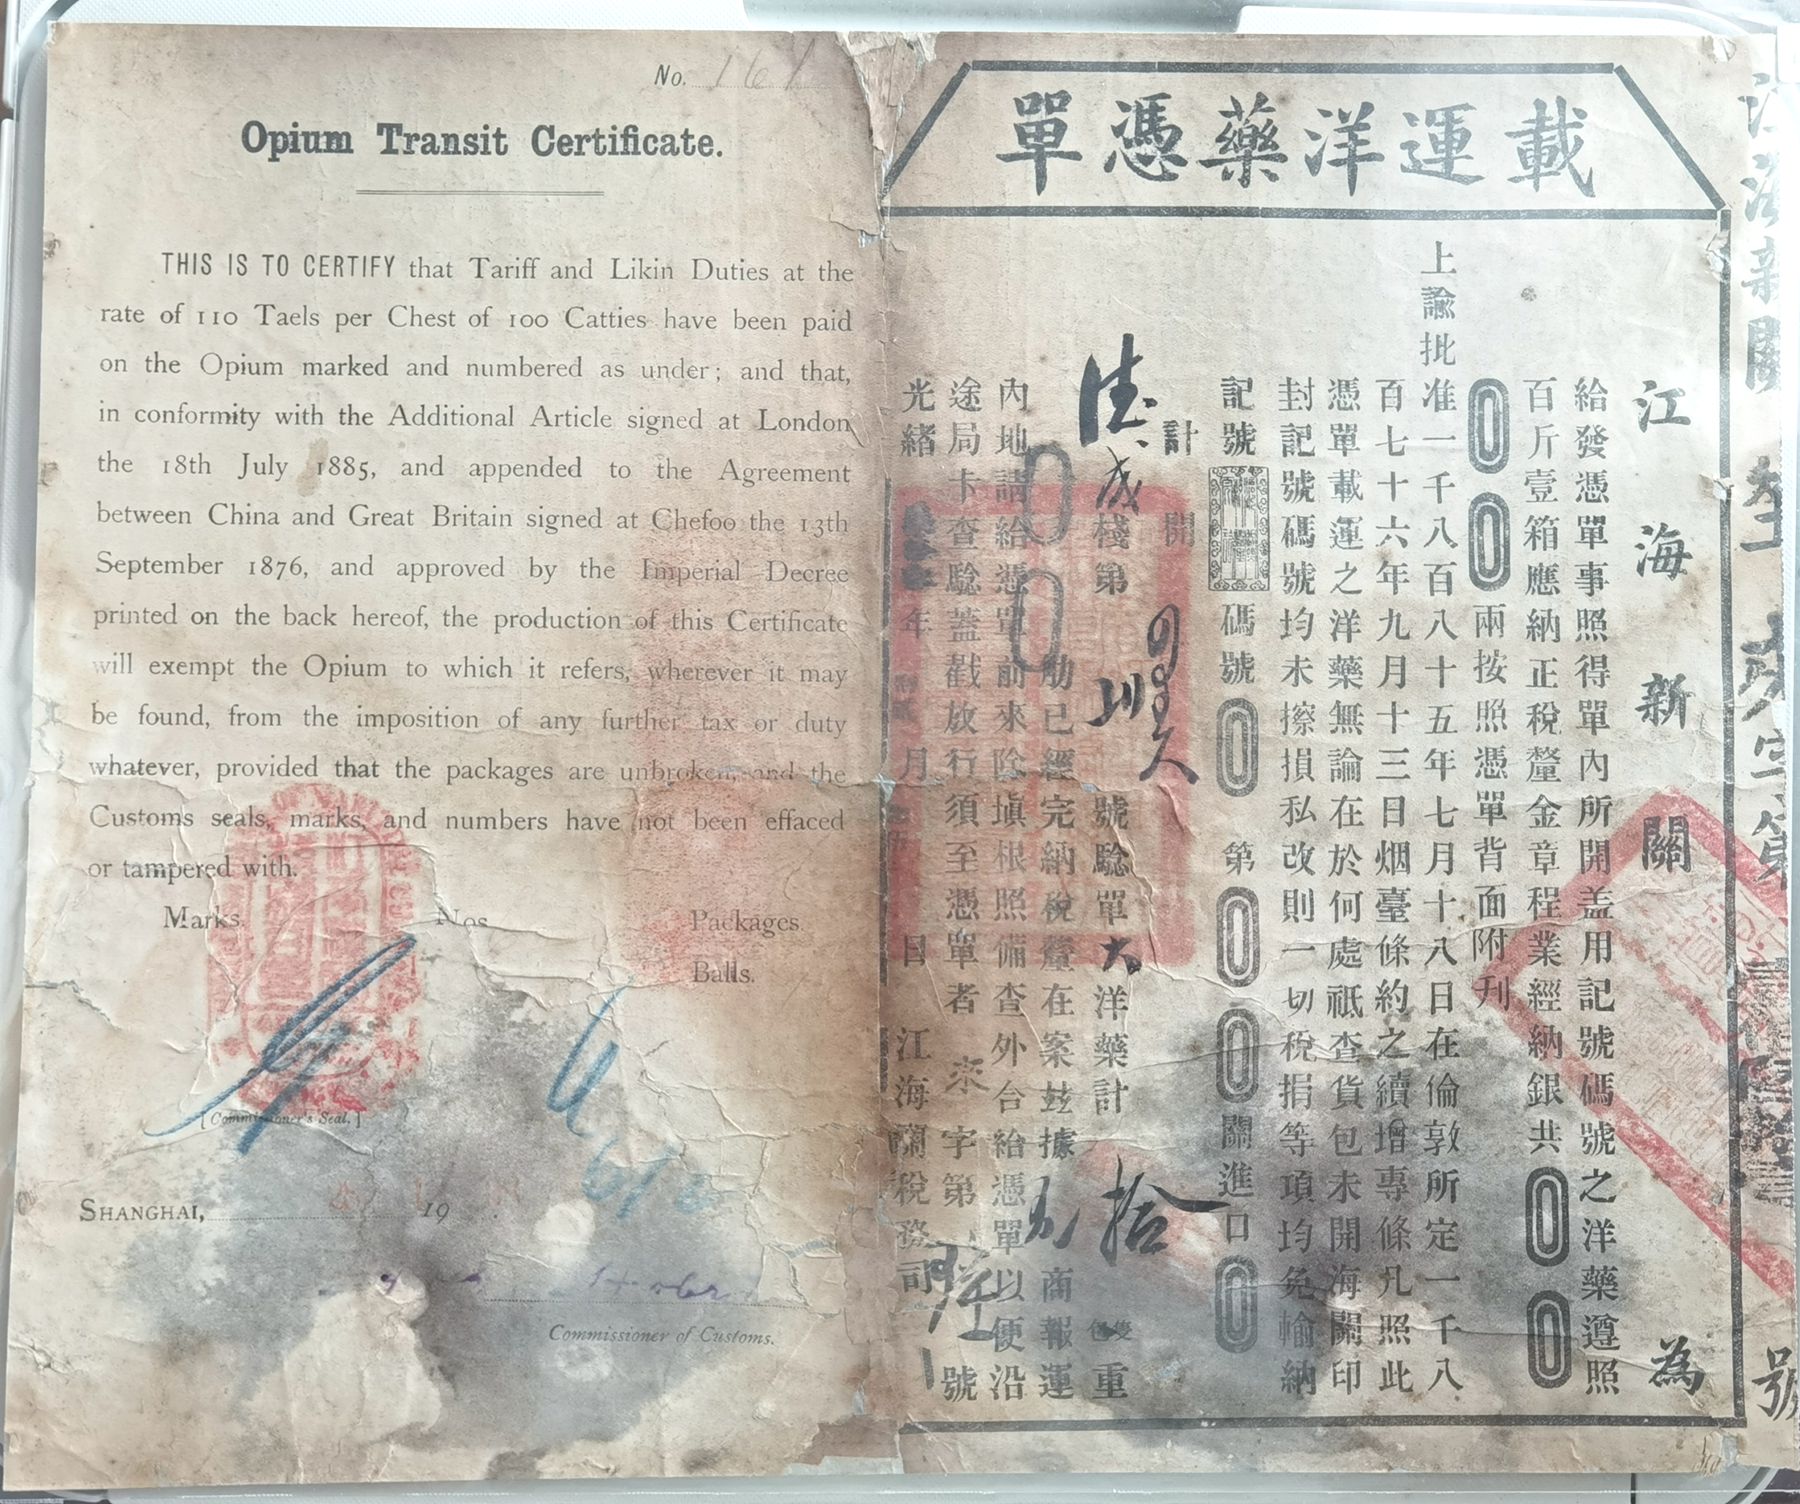 R2818, Shanghai Customs 1903 Opium Transit Certificate, 50 Kilograms Tariff Paid